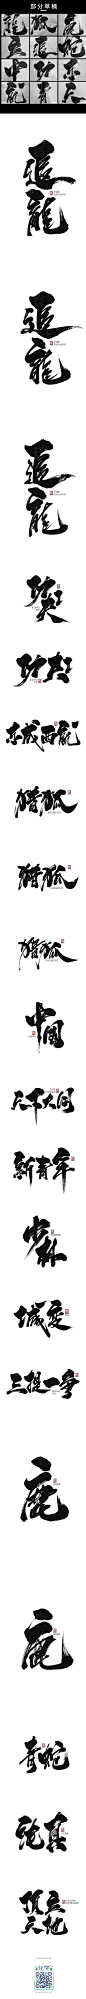 GG | 字体设计第四辑-字体传奇网-中国首个字体品牌设计师交流网